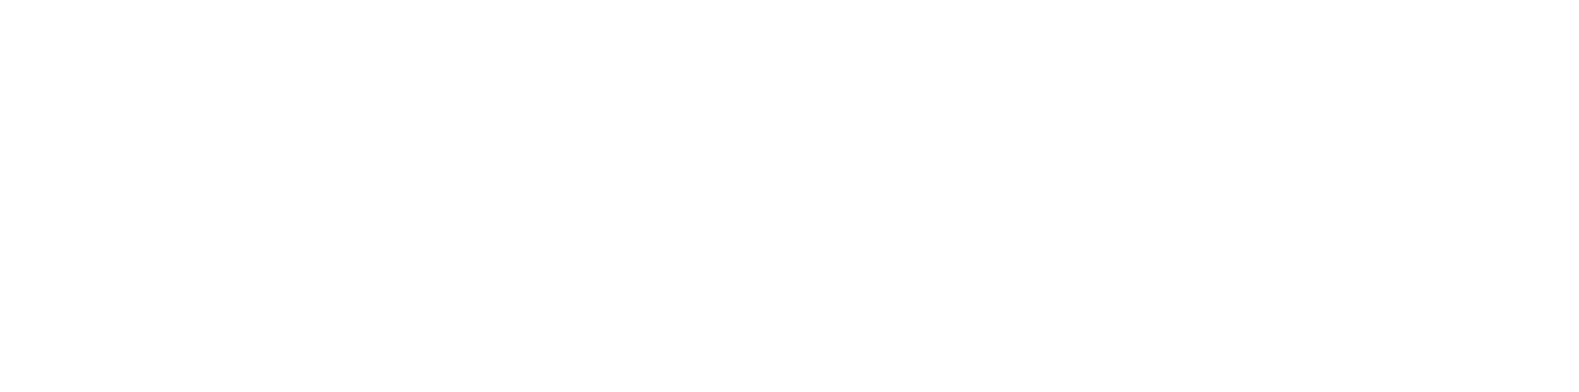 Healthcare Services Group logo grand pour les fonds sombres (PNG transparent)